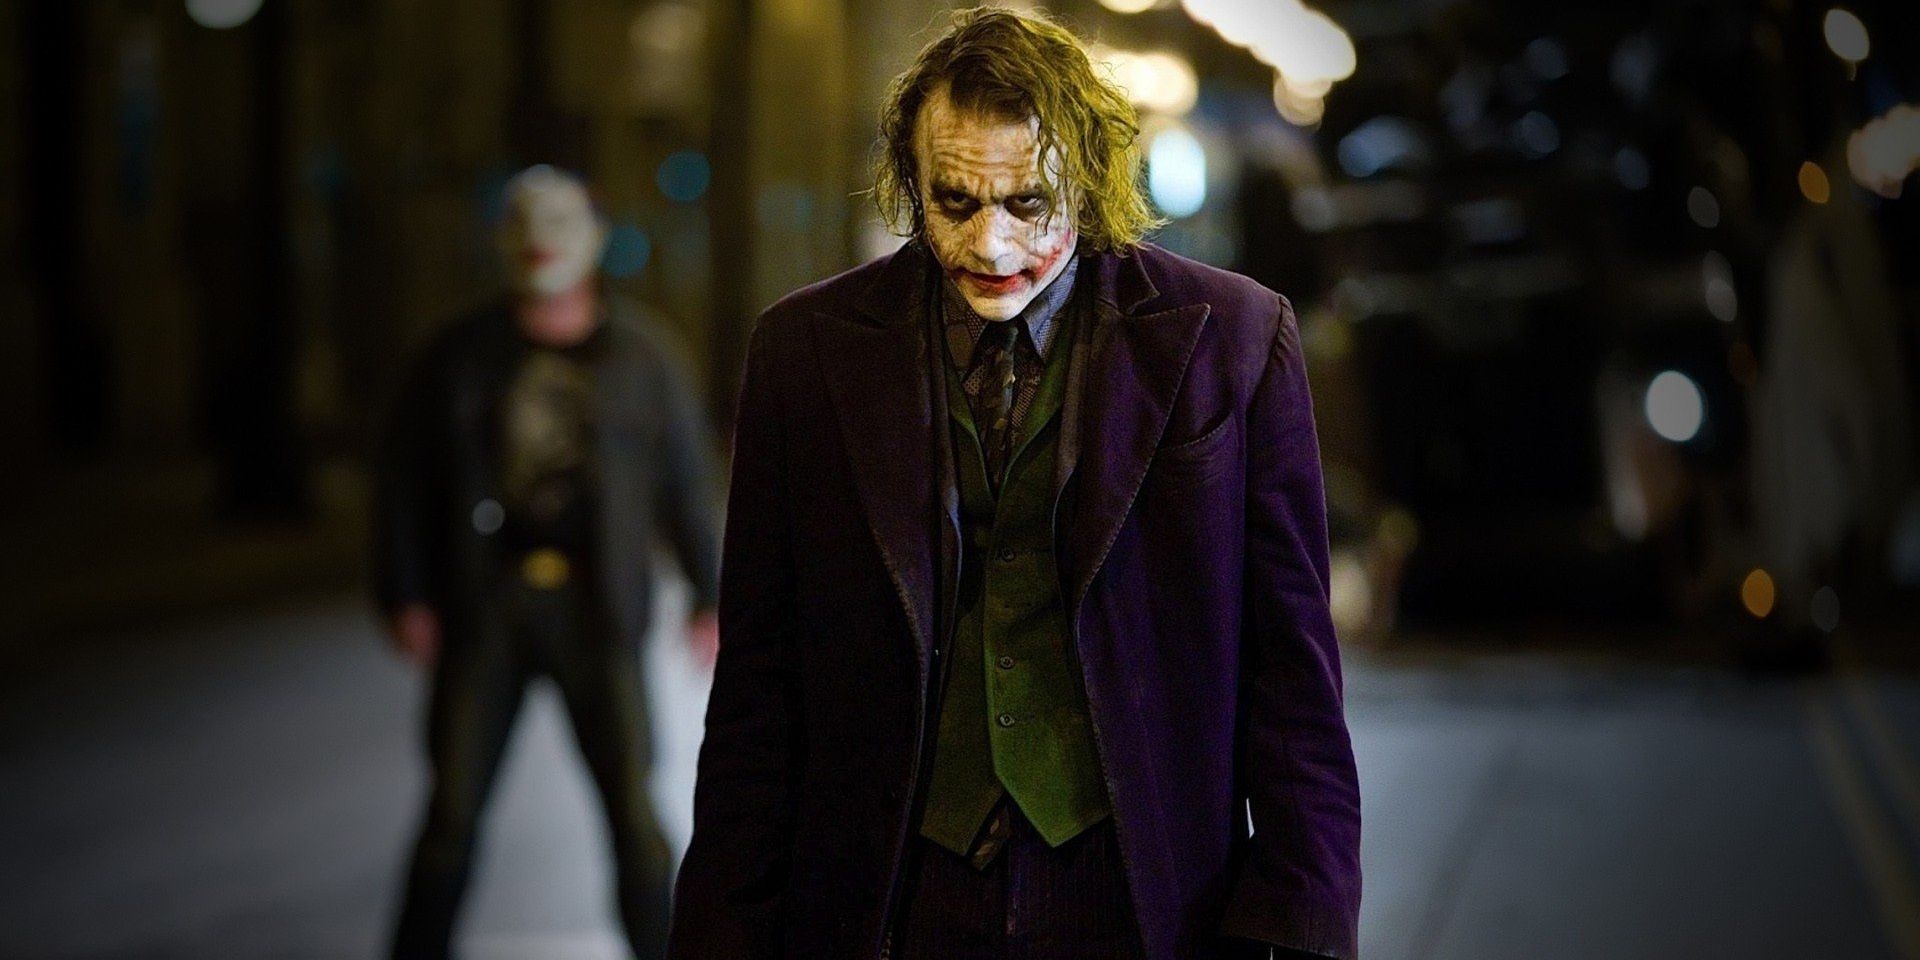 The Joker on the street in The Dark Knight